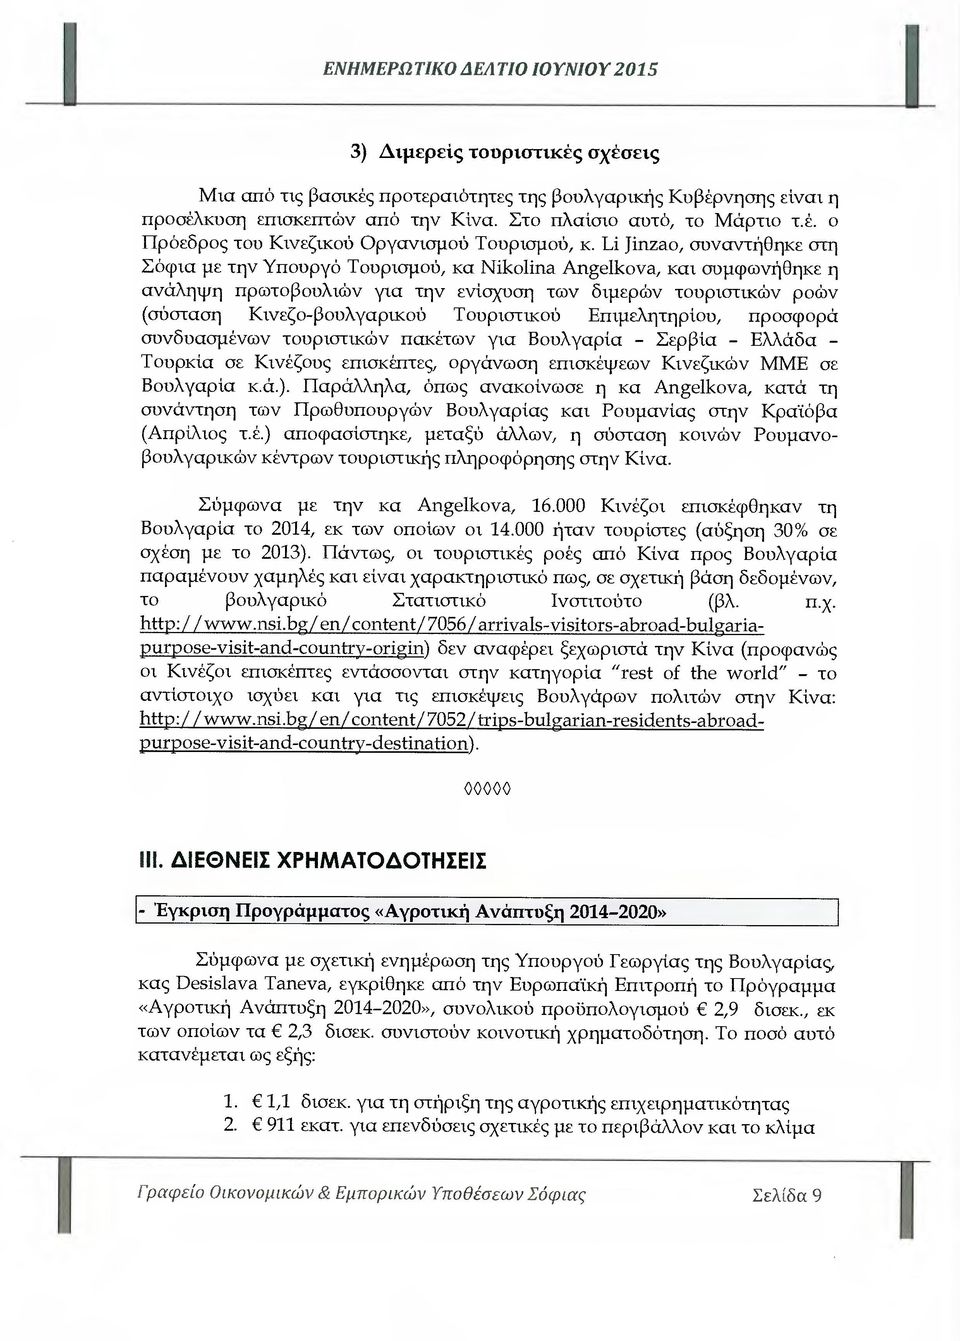 Τουριστικού Επιµελητηρίου, προσφορά συνδυασµένων τουριστικών πακέτων για Βουλγαρία - Σερβία - Ελλάδα - Τουρκία σε Κινέζους επισκέπτες, οργάνωση επισκέψεων Κινεζικών ΜΜΕ σε Βουλγαρία κ.ά.).